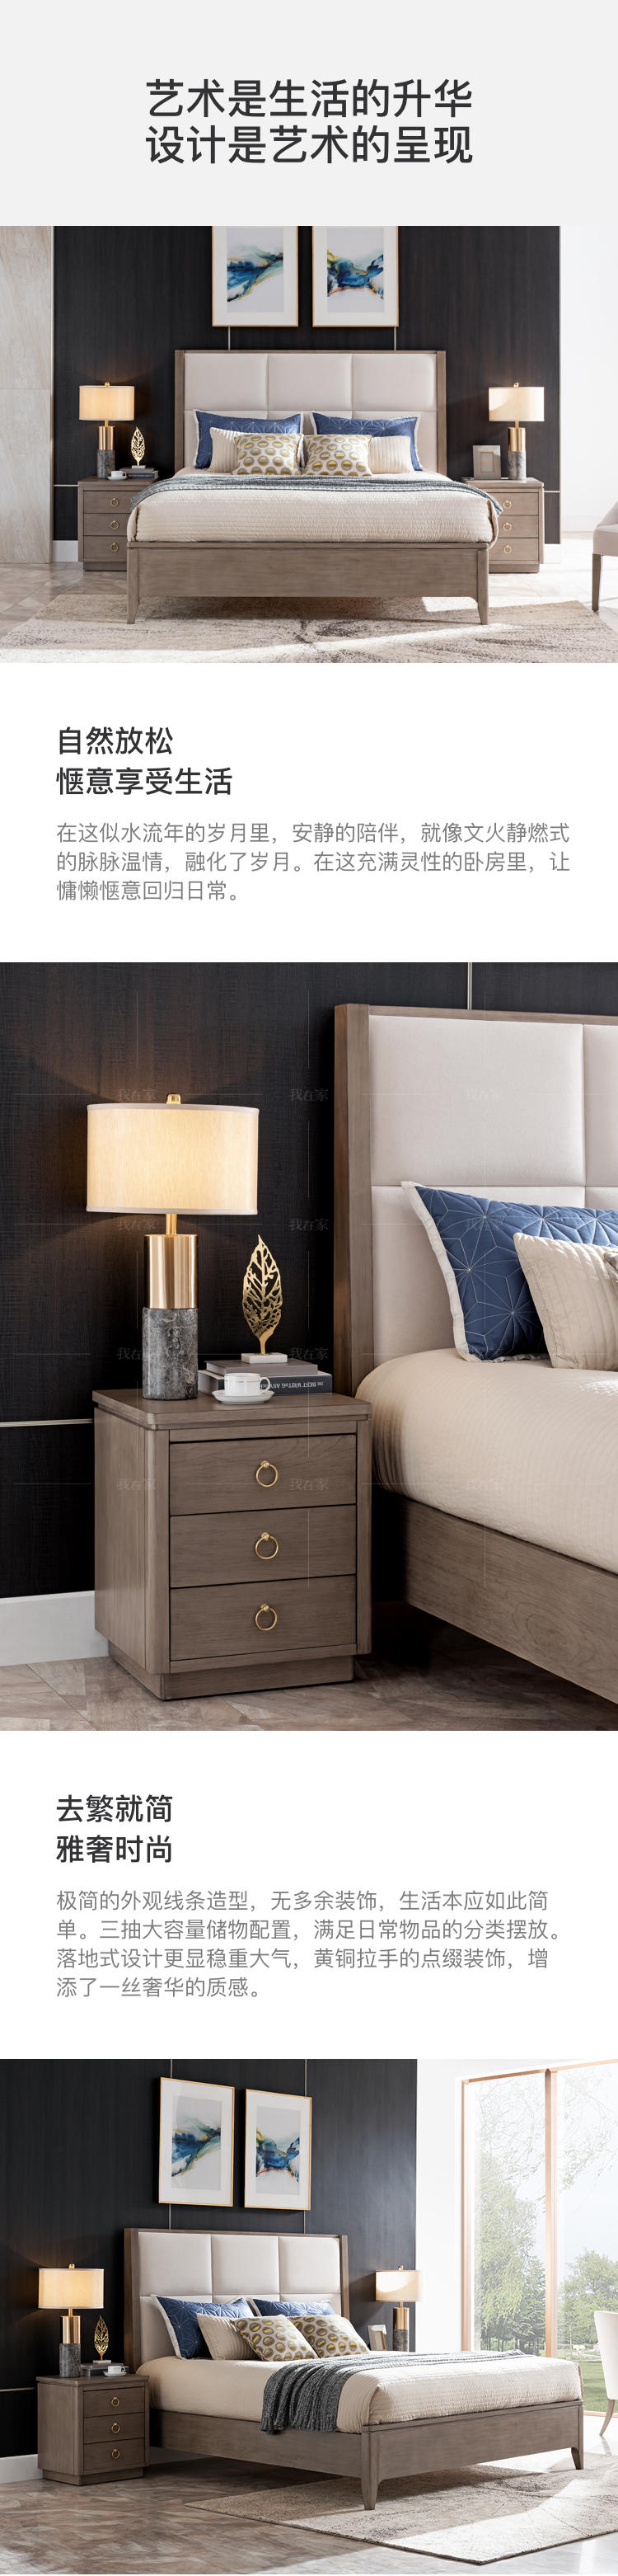 现代美式风格休斯顿床头柜的家具详细介绍